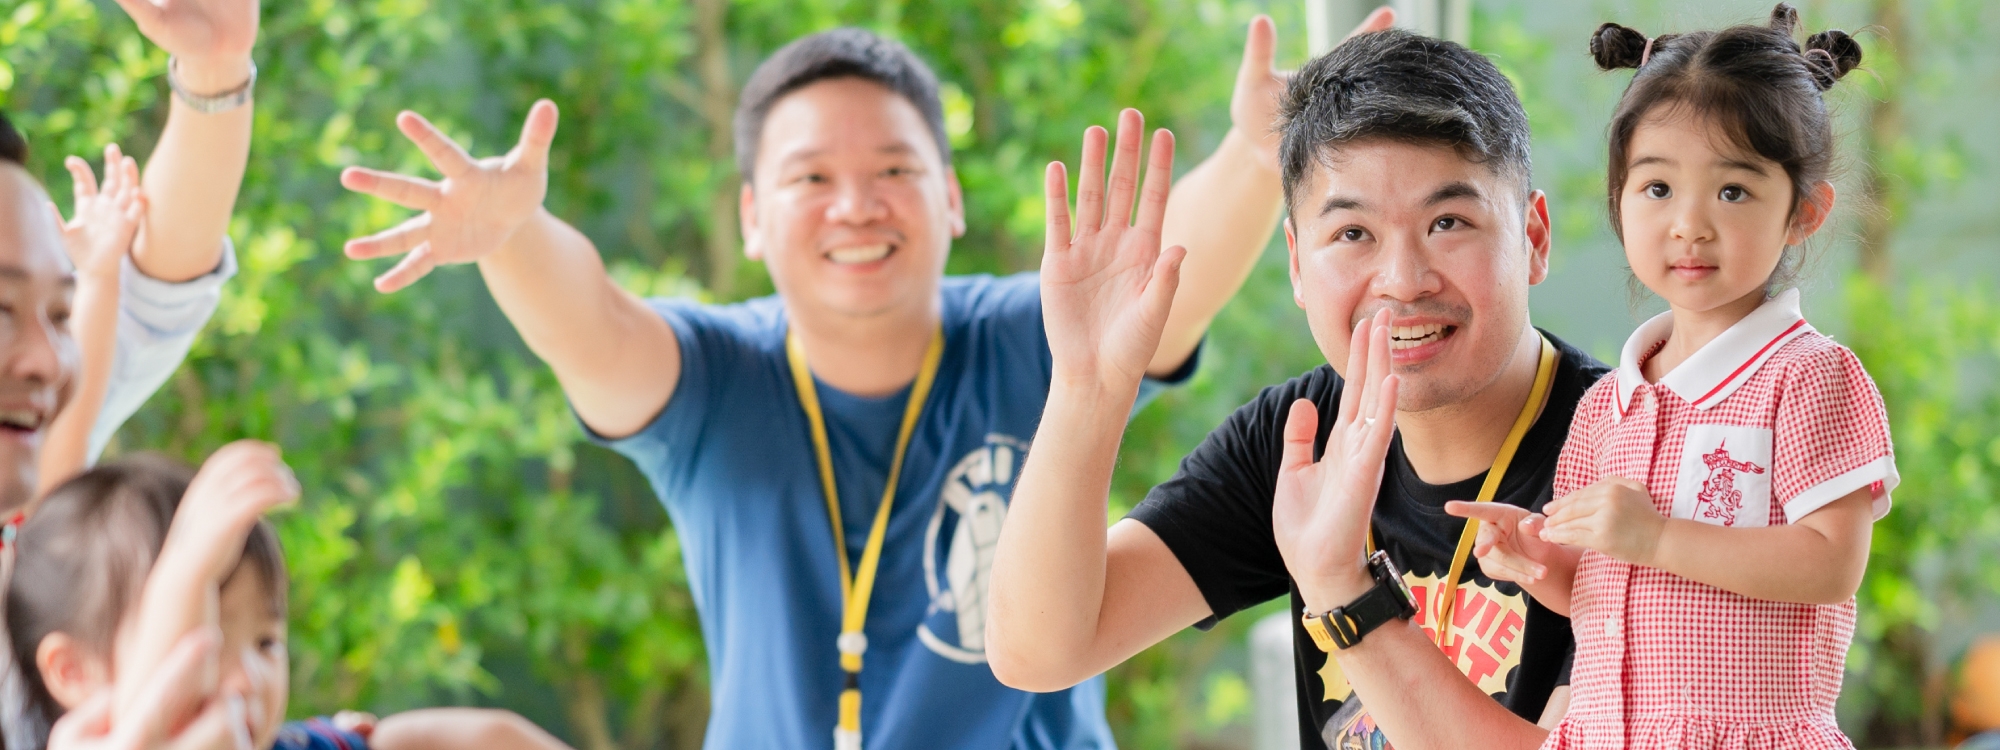 Magical Moments: Early Years Community Picnic at King's Bangkok!